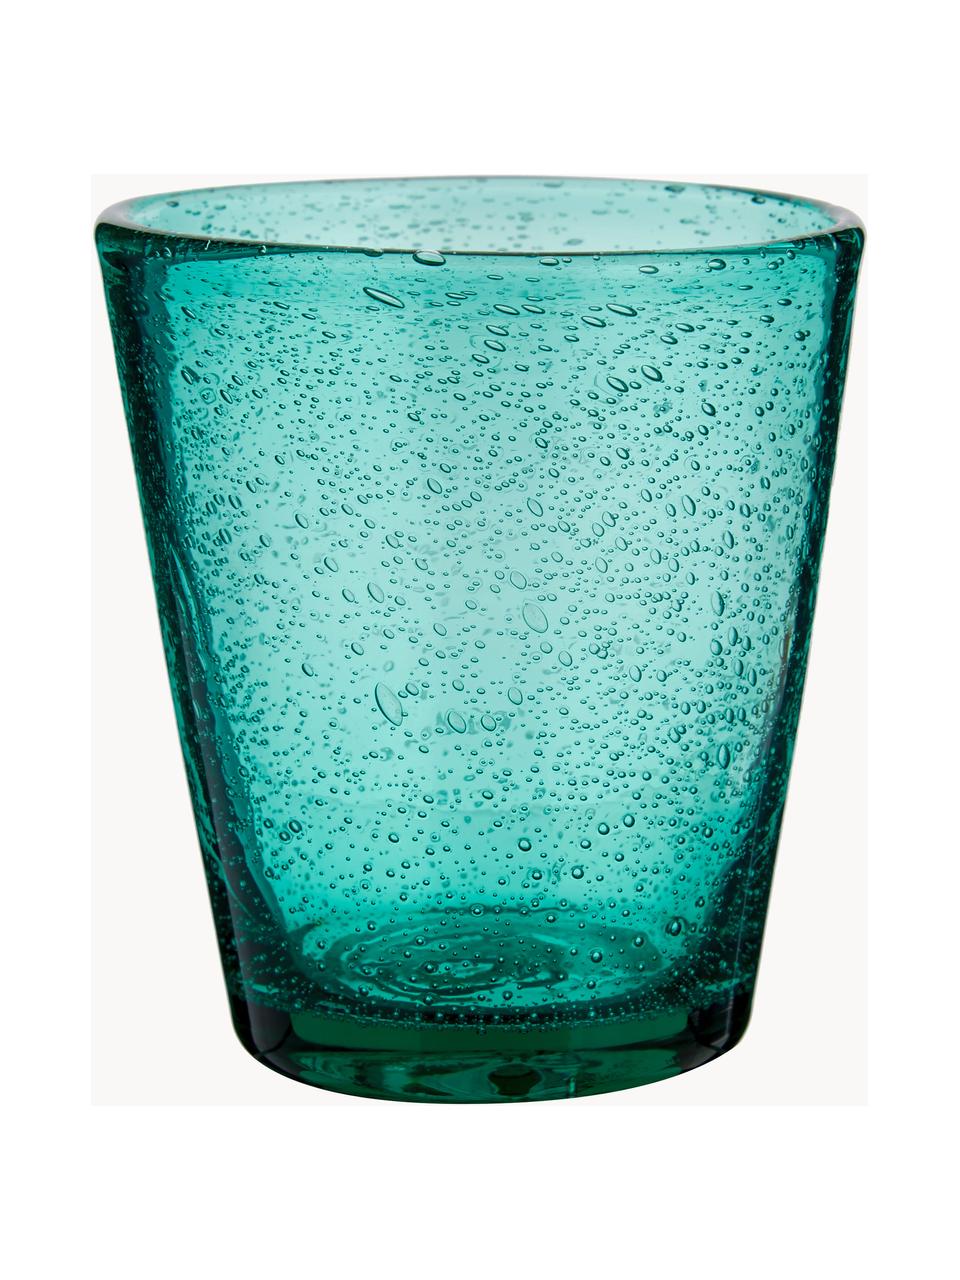 Sada sklenic na vodu se vzduchovými bublinami Baita, 6 dílů, Sklo, Odstíny modré, tyrkysové a šedé, transparentní, Ø 9 cm, V 10 cm, 330 ml